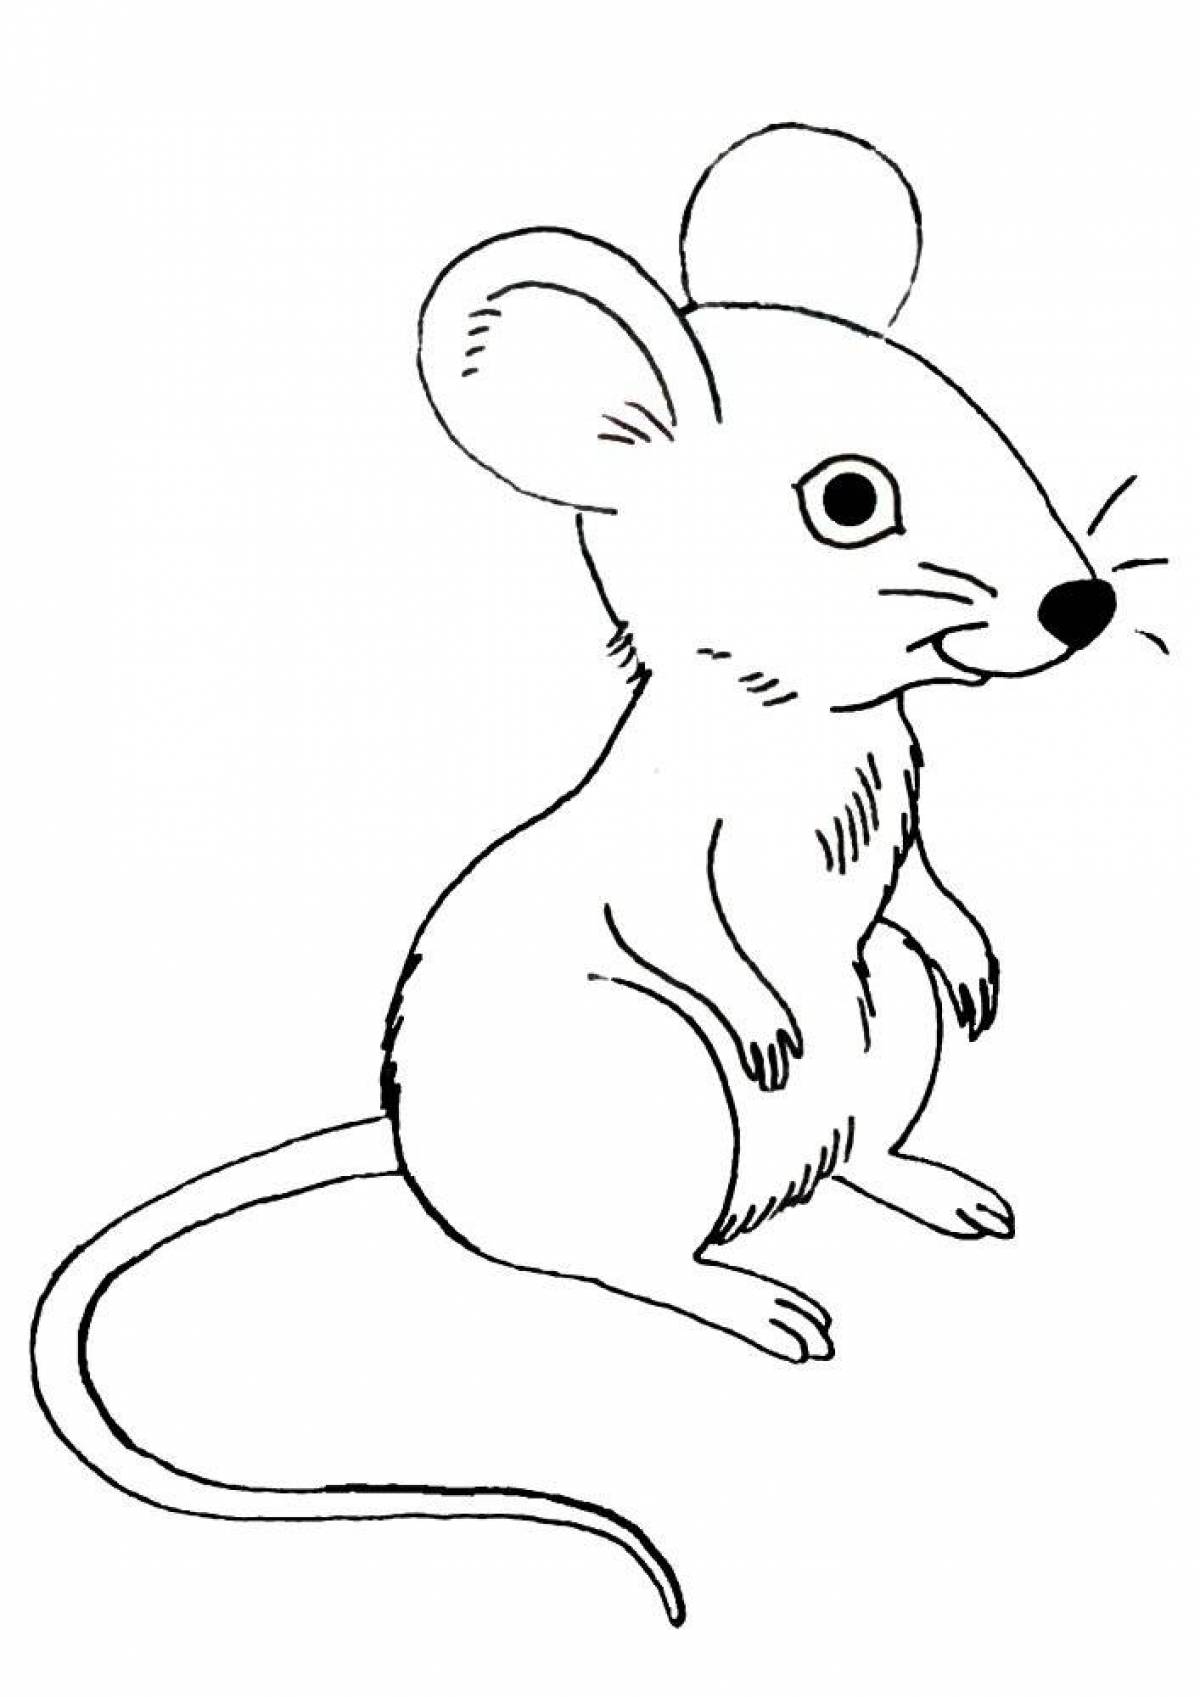 Раскраска мышь распечатать. Раскраска мышка. Мышка для раскрашивания детям. Мышка раскраска для детей. Мышонок раскраска для детей.